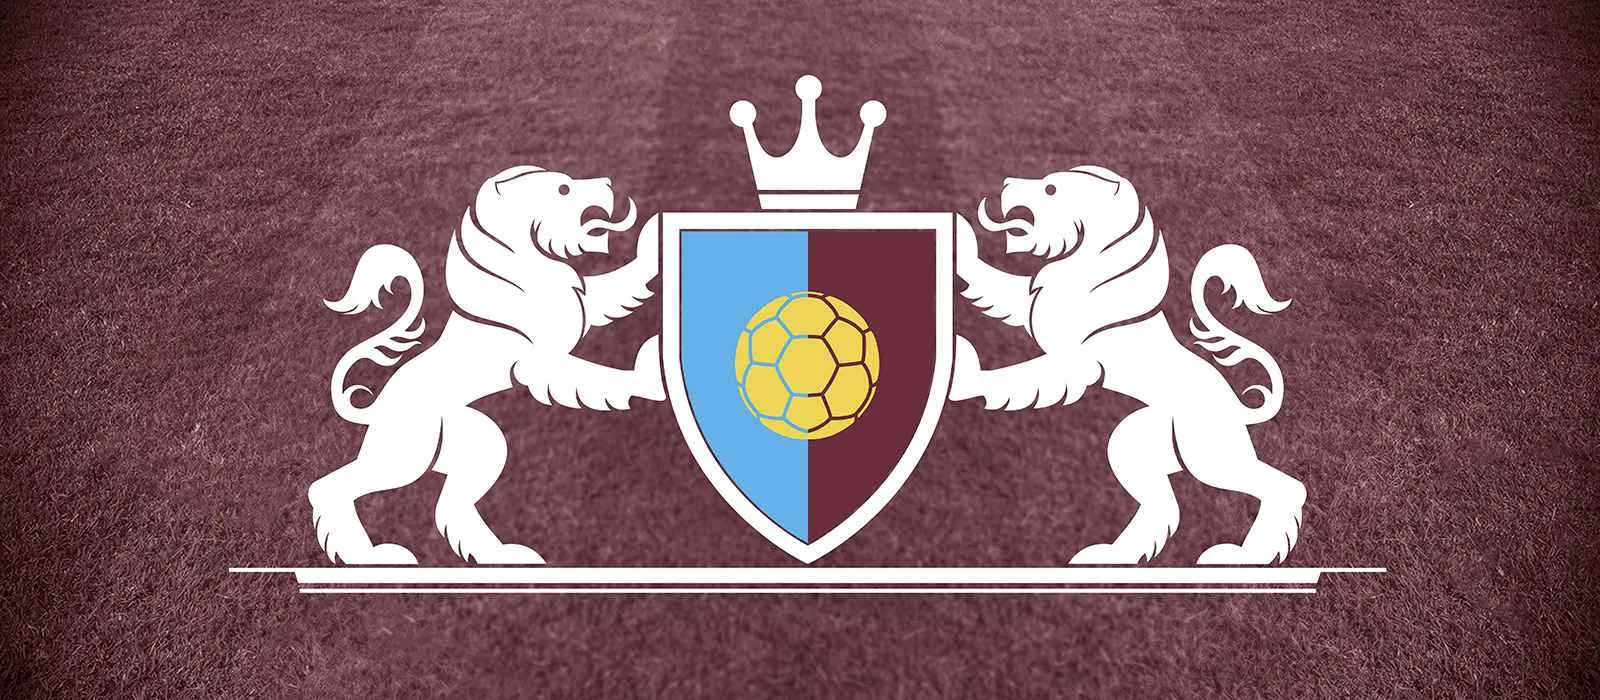 Logga med färger som representerar Premier League-fotbollslaget West Ham